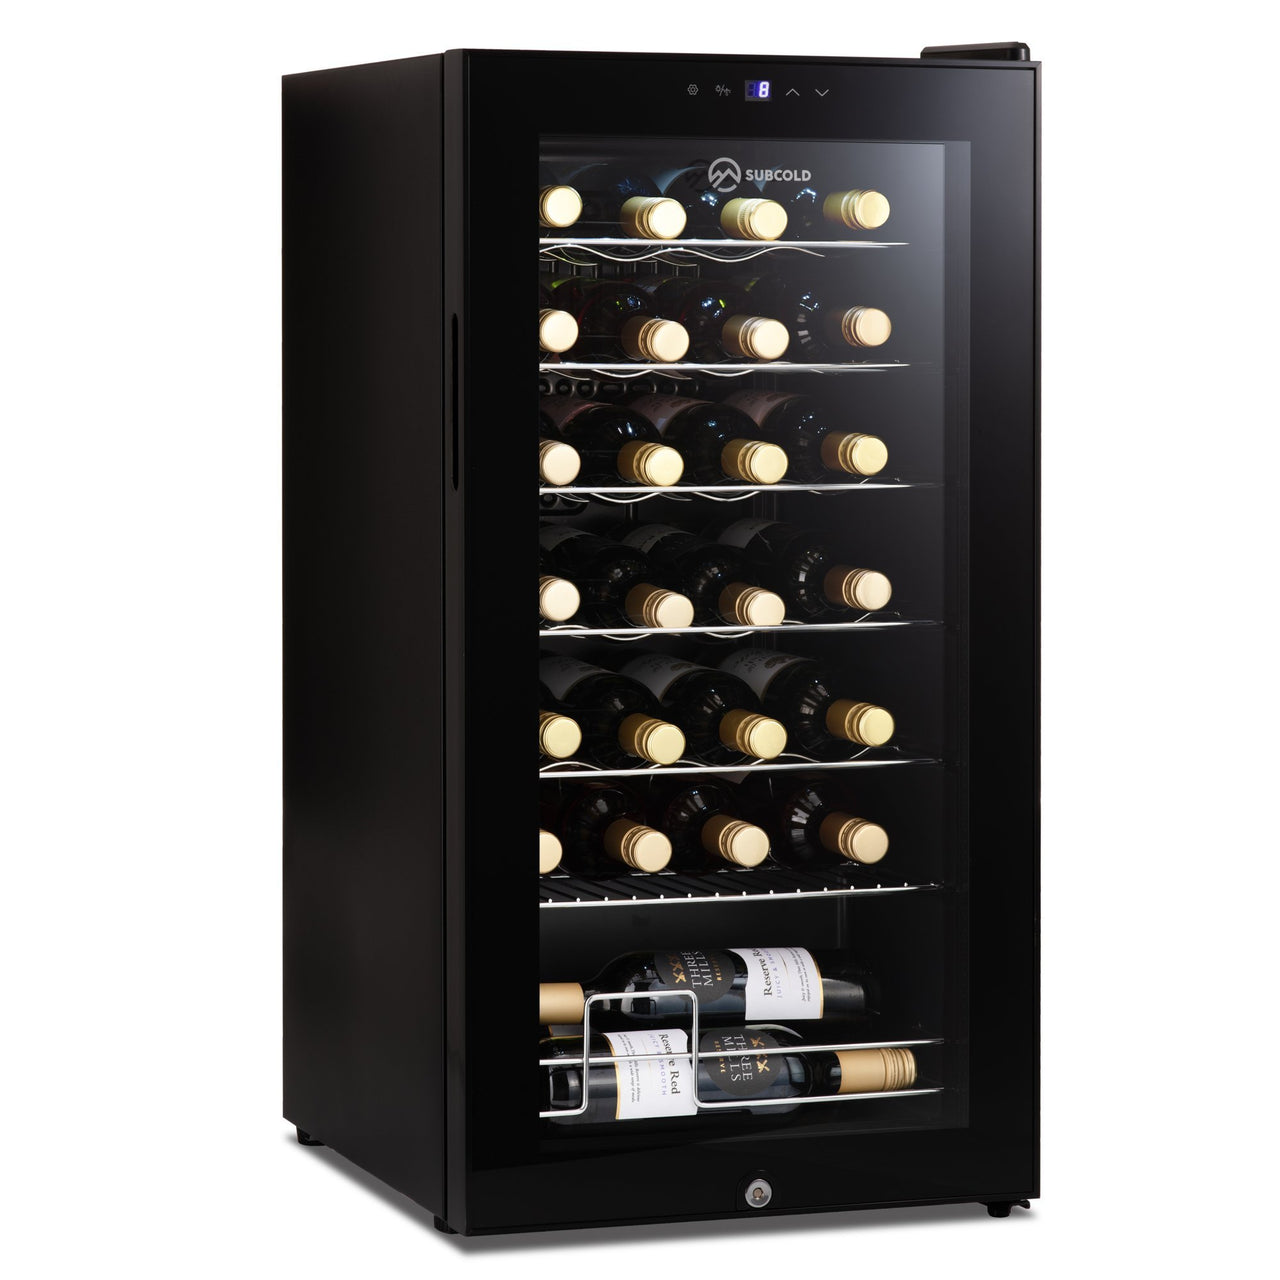 Subcold Viva 28 bottles wine cooler fridge (82 litre)